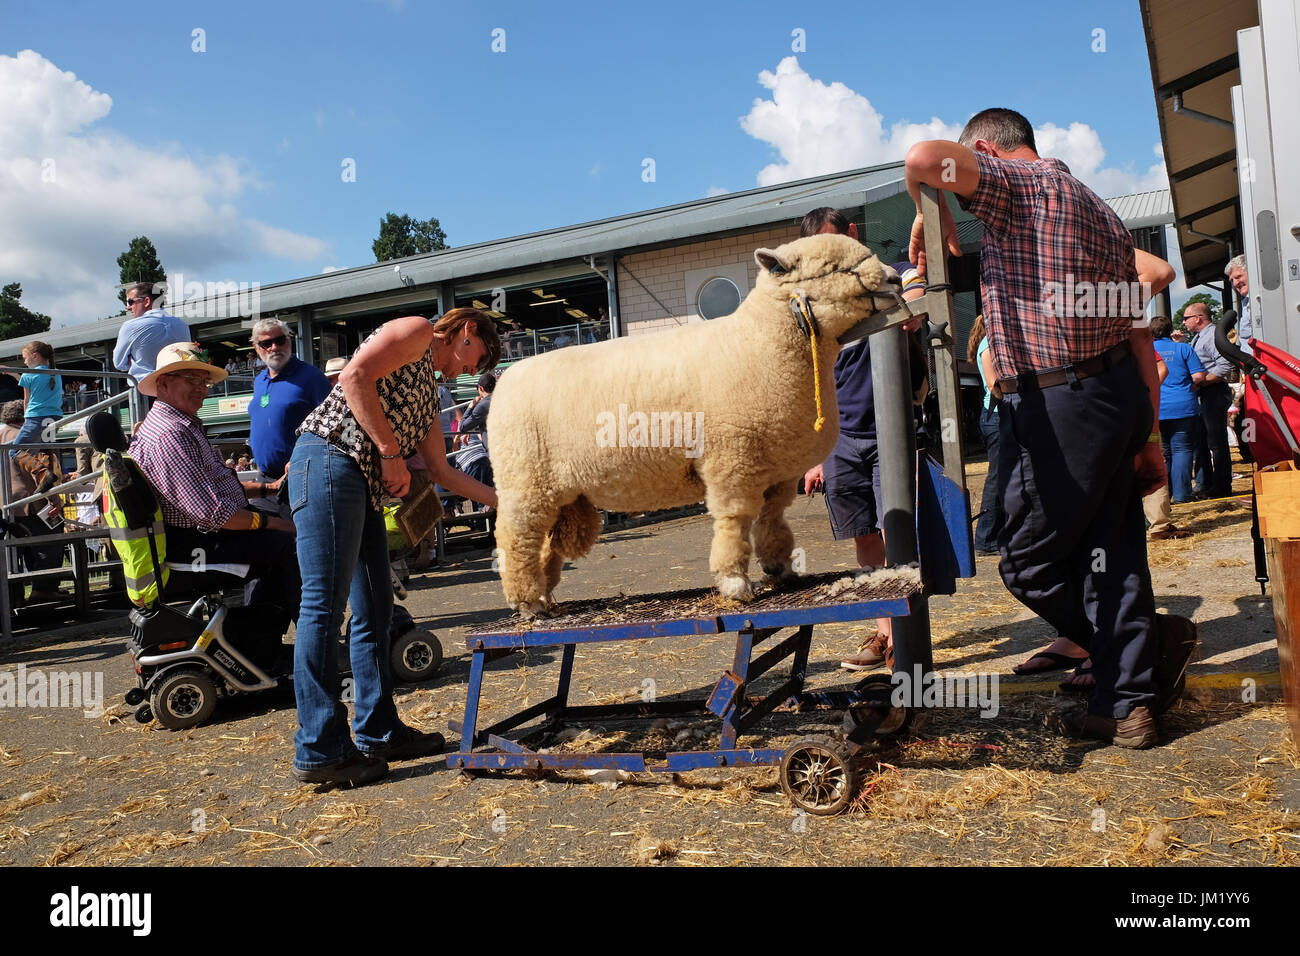 Royal Welsh Show, Builth Wells, Powys, Wales - Juillet 2017 - Les moutons d'obtenir un pinceau et soin final avant d'être exposées dans l'anneau de jugement lors de la deuxième journée de cette années Royal Welsh Show - le Royal Welsh est le plus grand salon de l'agriculture. Photo Steven Mai / Alamy Live News Banque D'Images